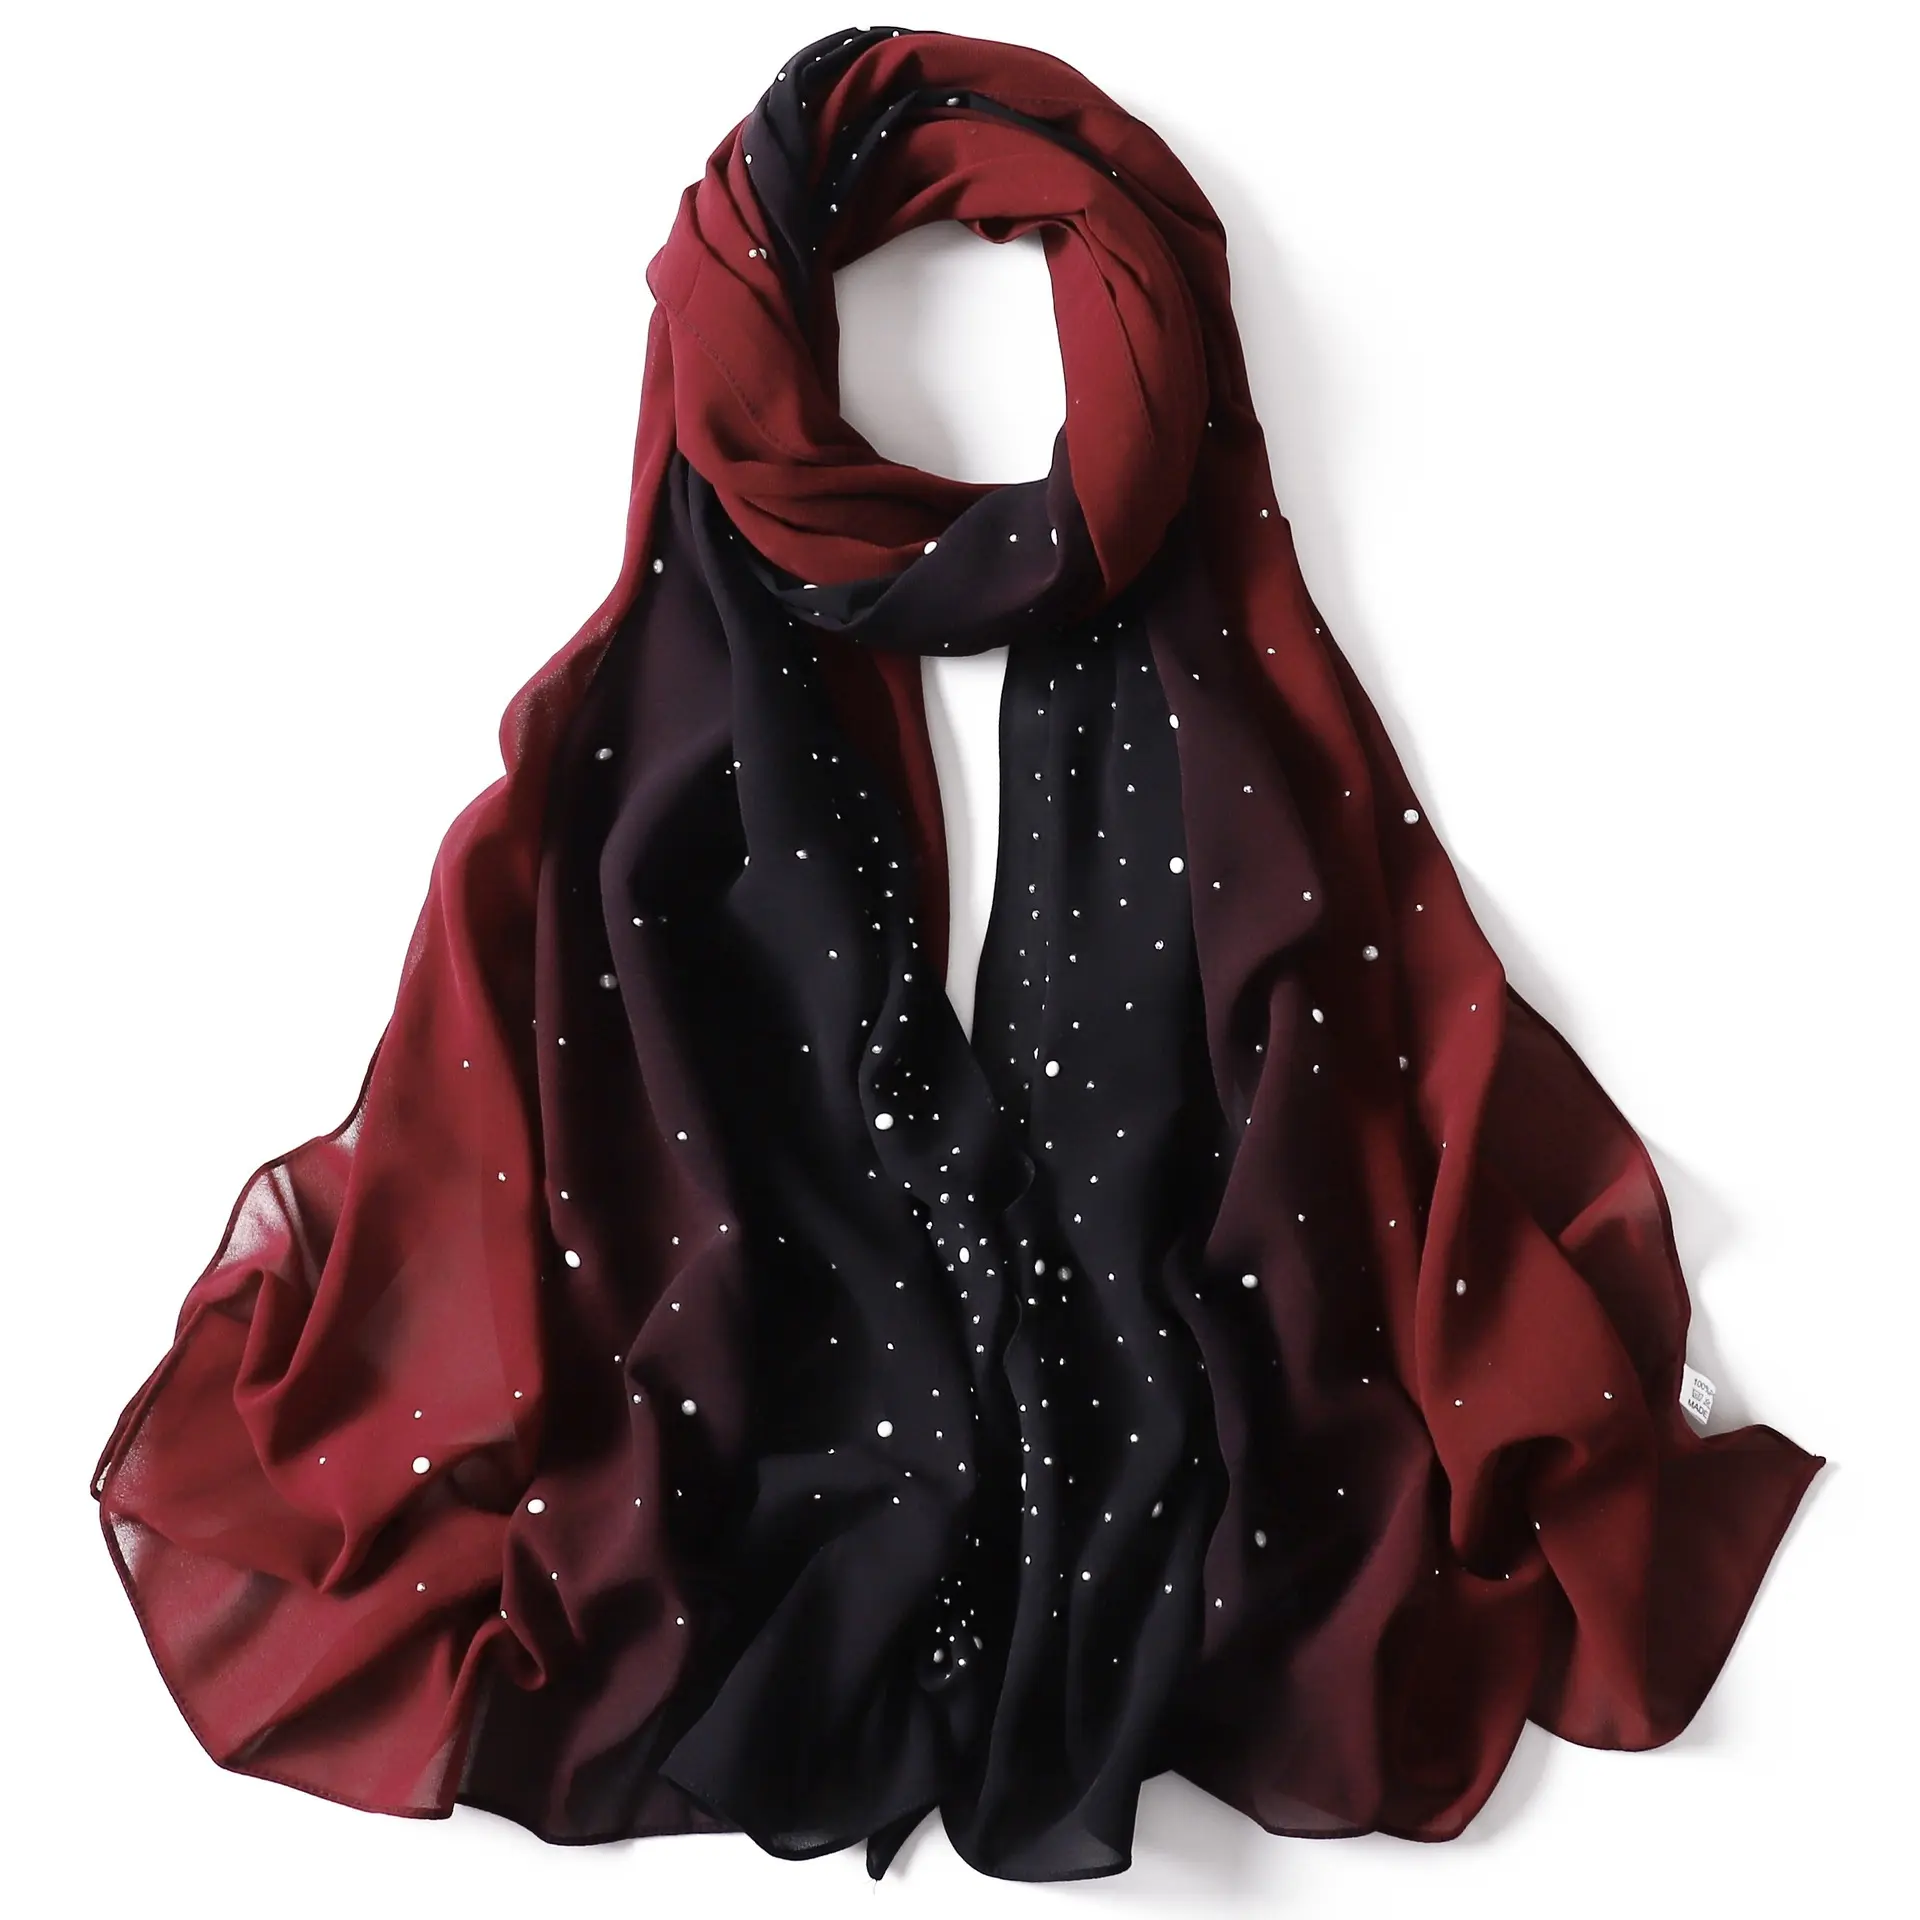 Pearl chiffon shiny crystal rhinestone hijab scarf for women Lady